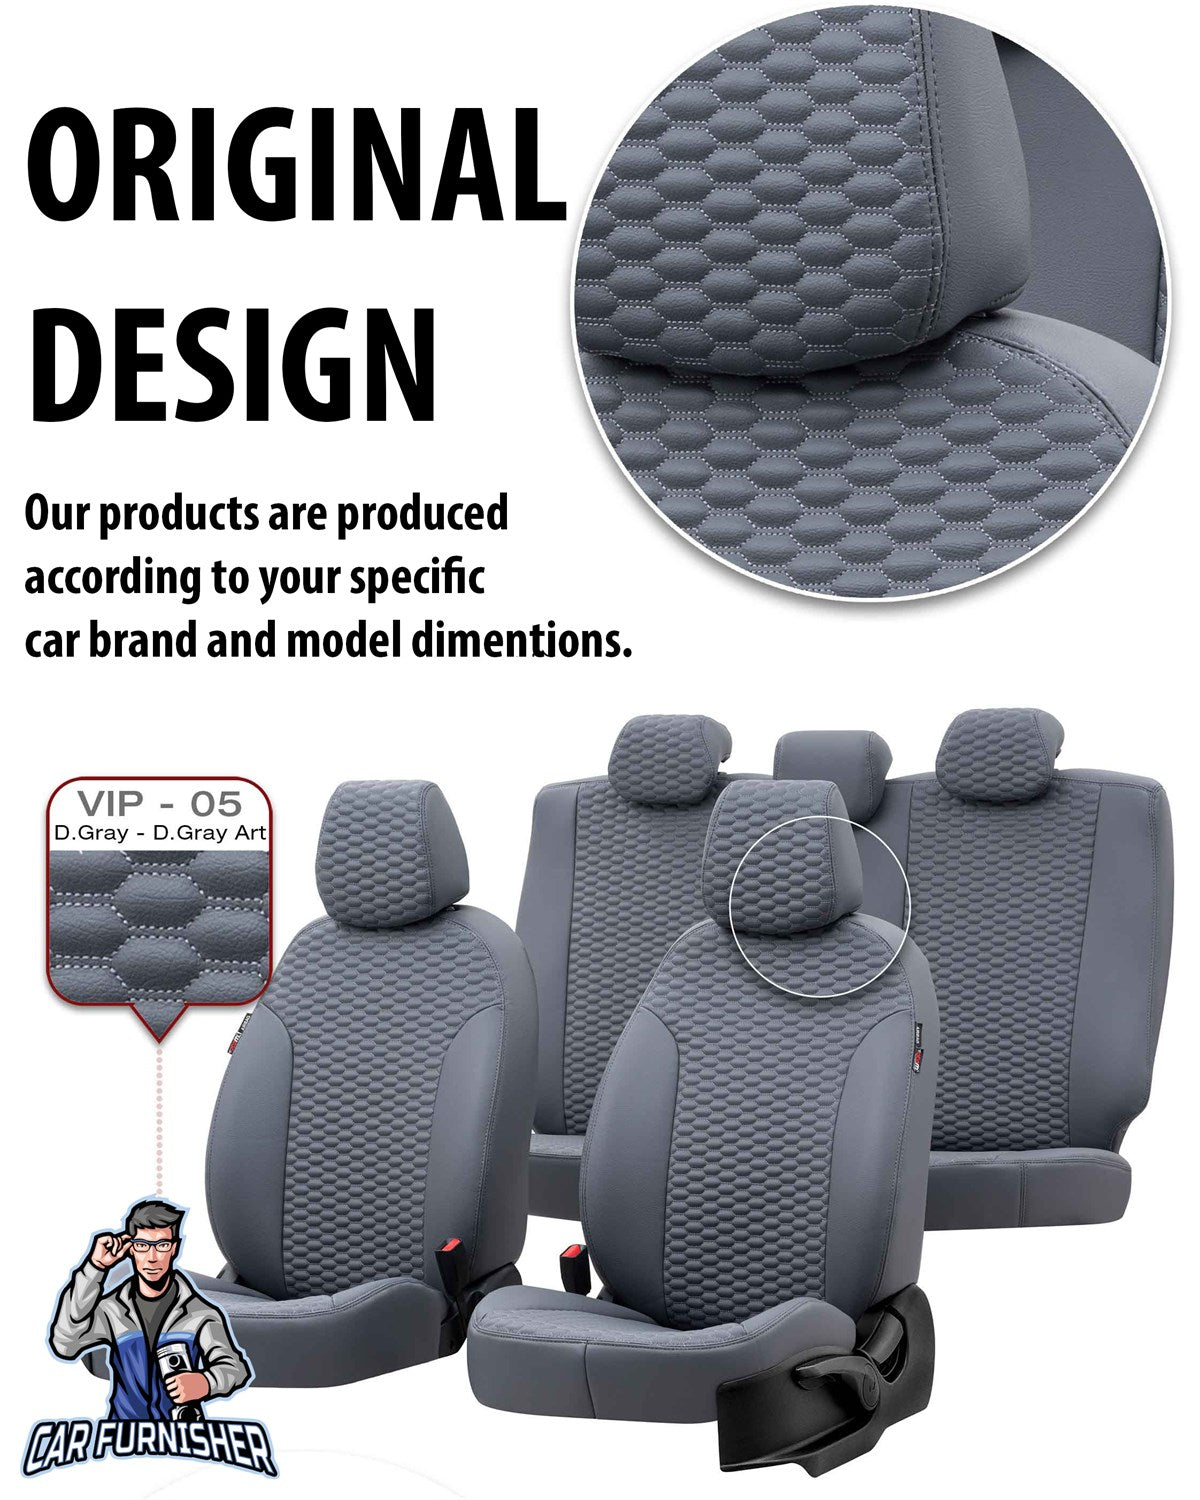 Audi A6 Car Seat Cover 1997-2018 Custom Tokyo Design Dark Gray Full Set (5 Seats + Handrest) Full Leather